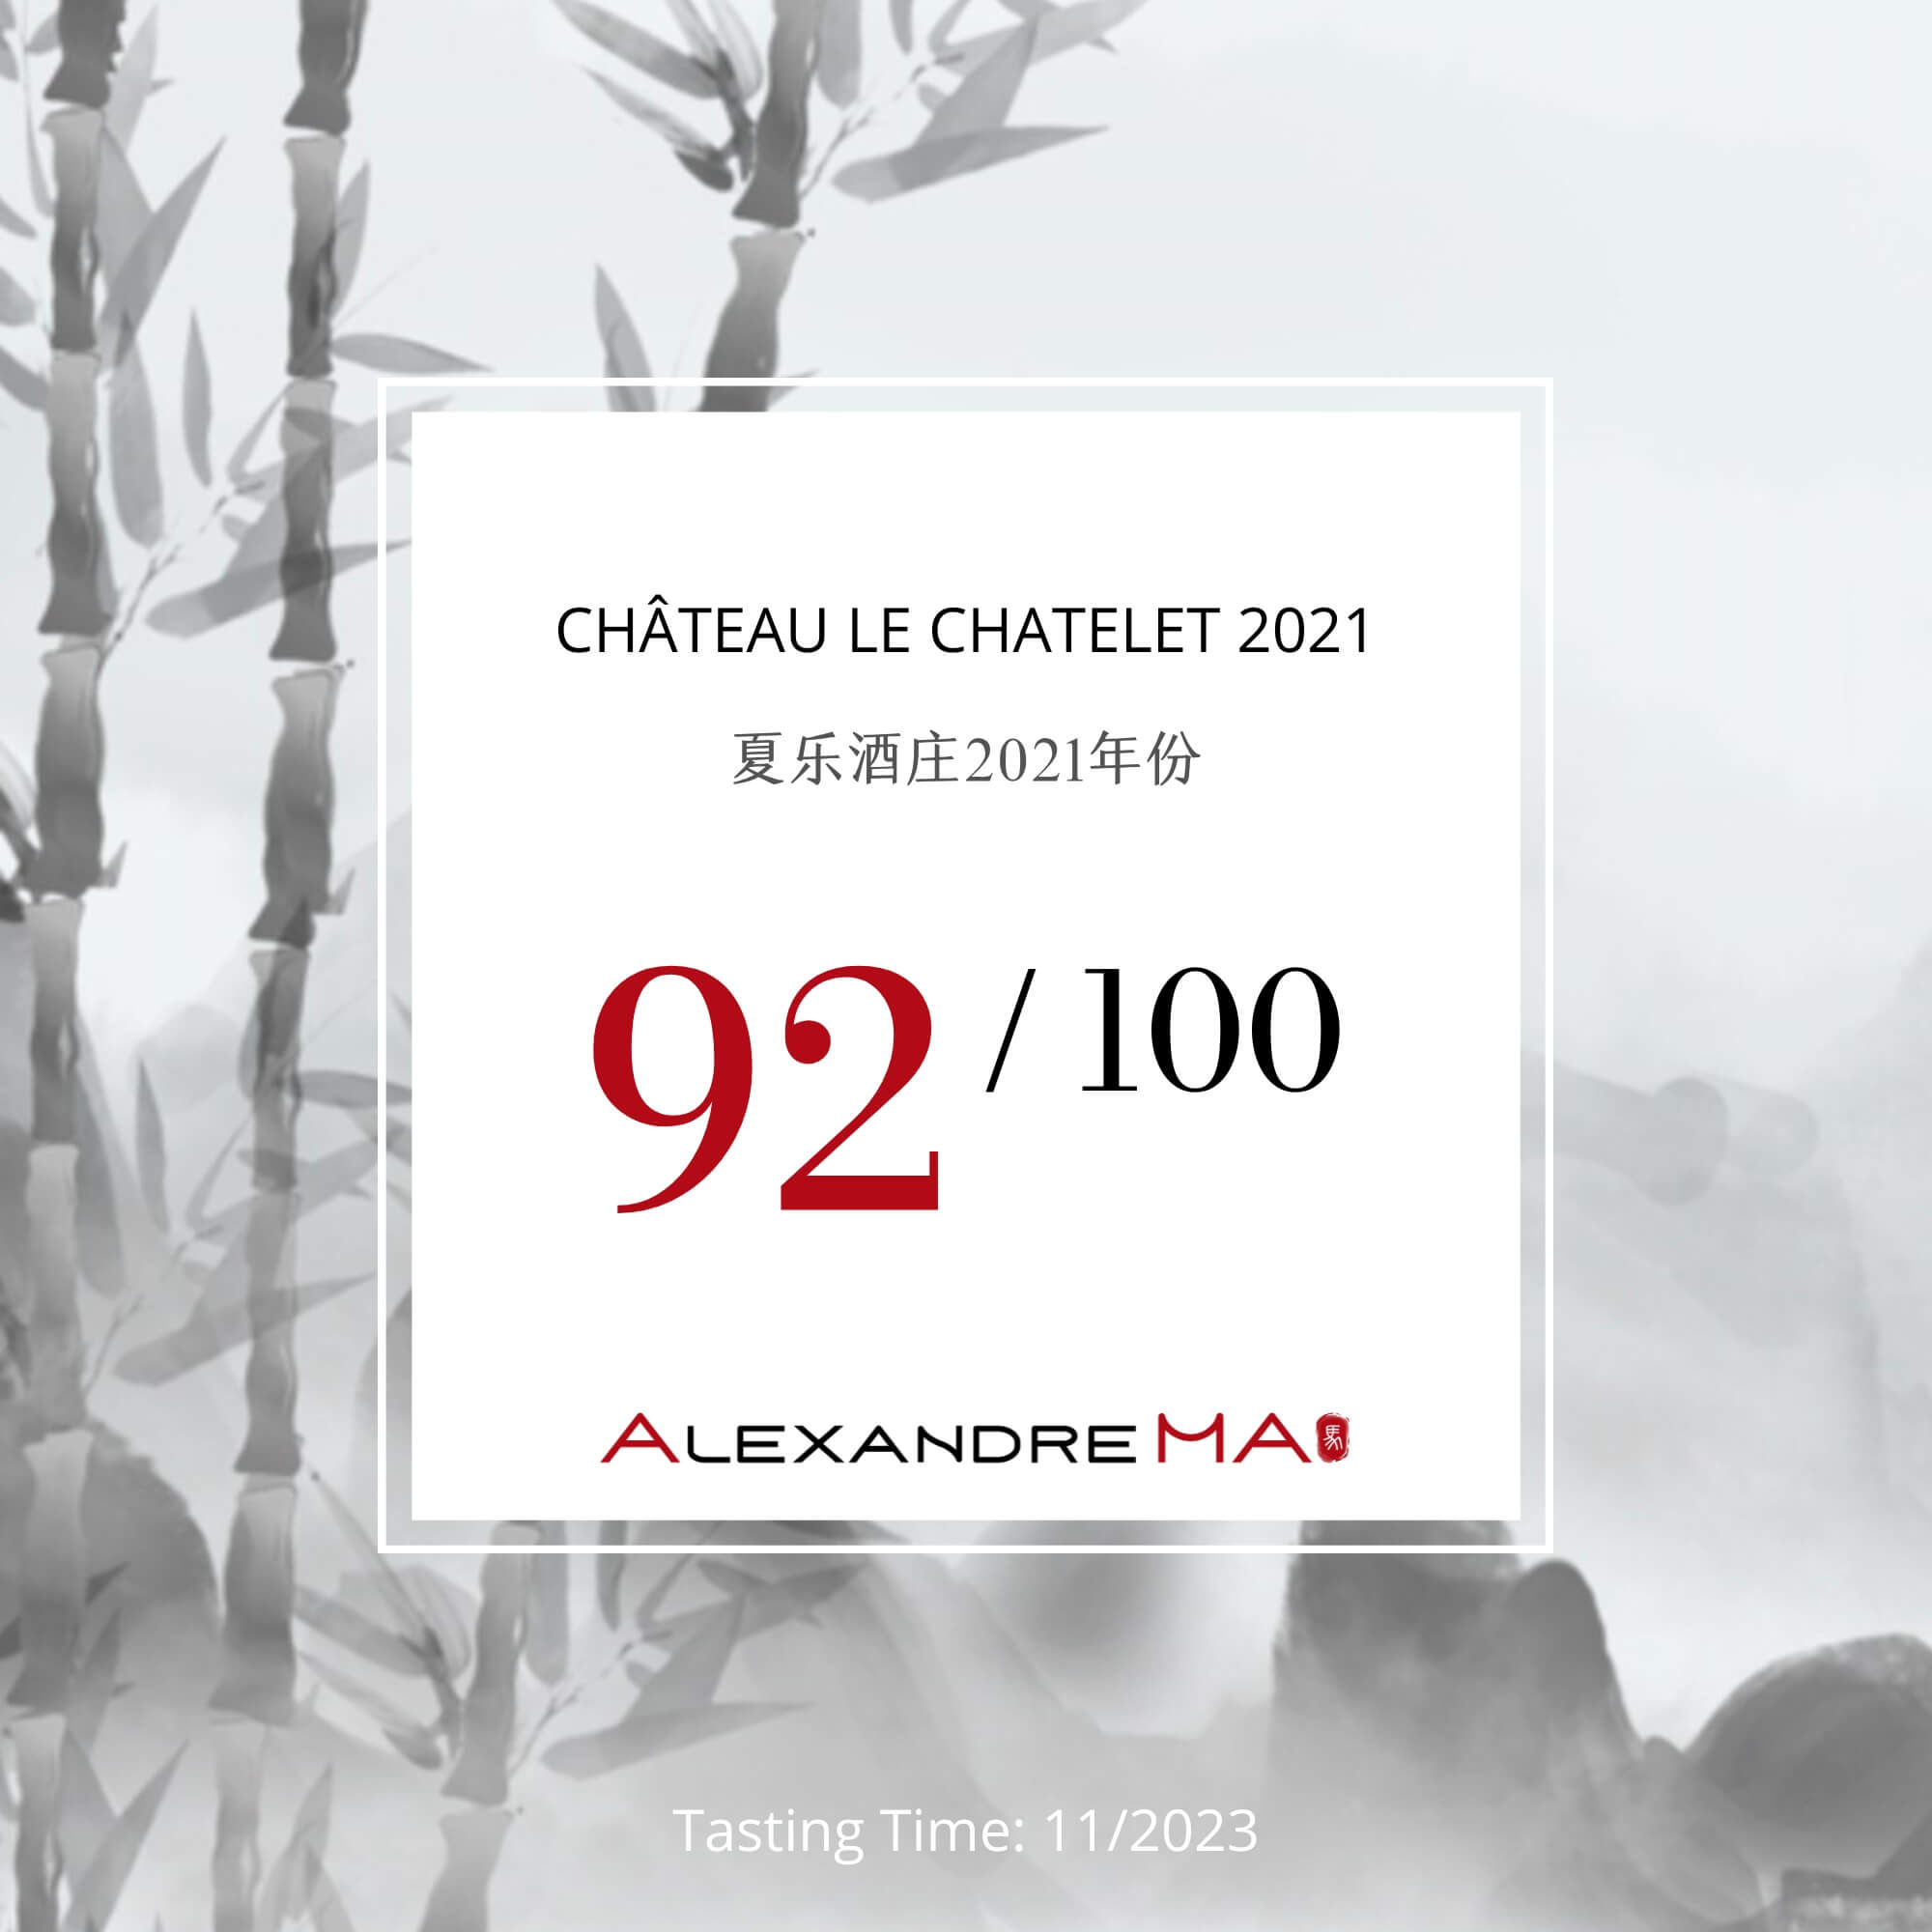 Château Le Chatelet 2021 - Alexandre MA